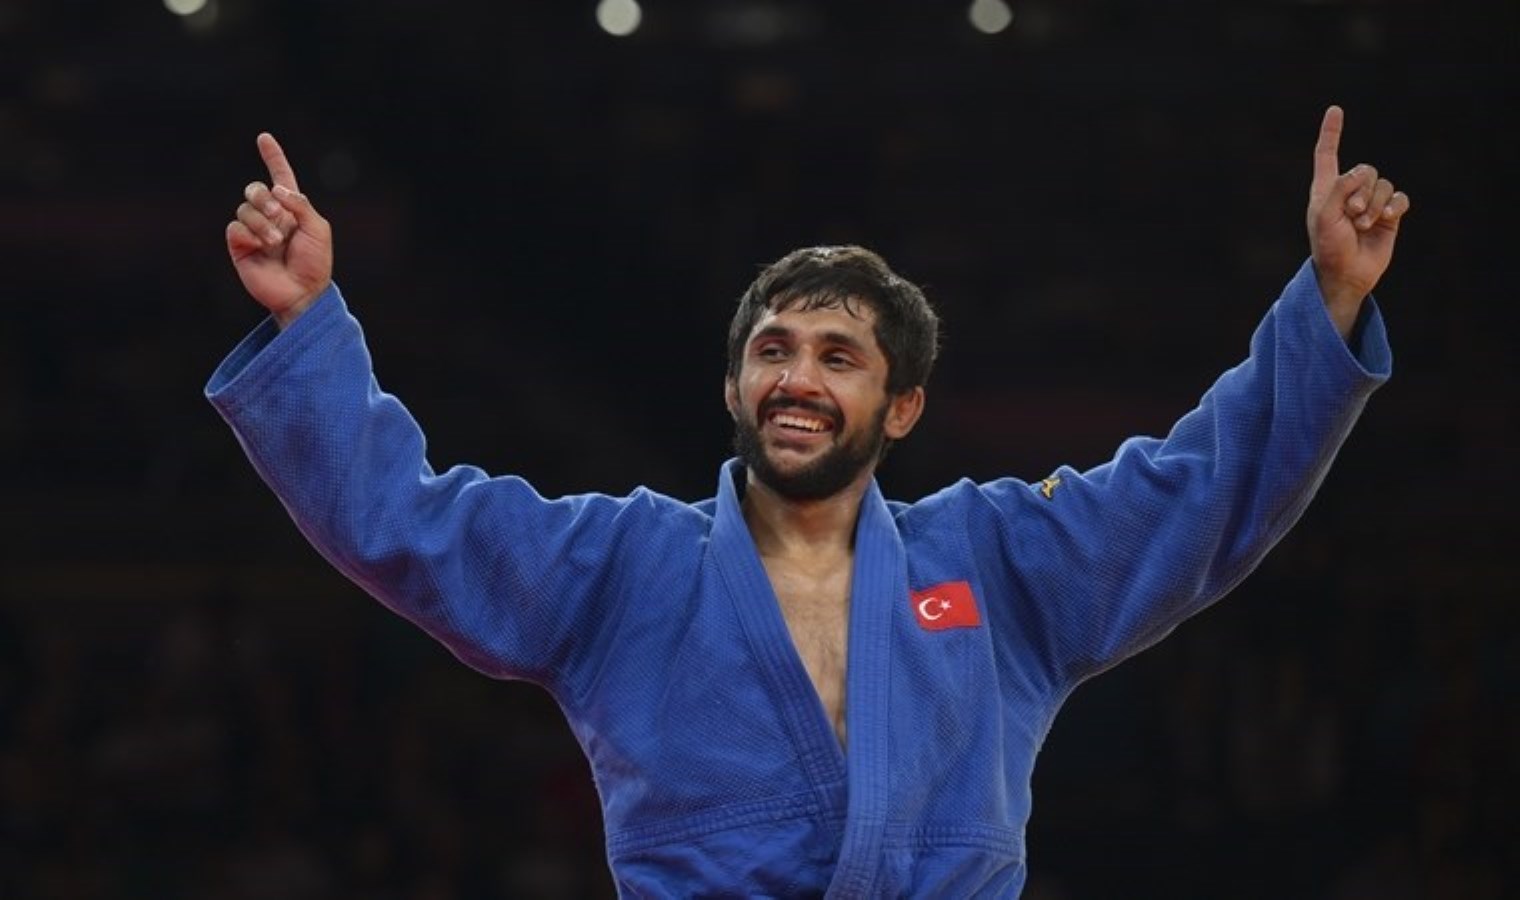 Finale son 1 adım kaldı: Milli judocu Salih Yıldız, Paris 2024’te yarı finalde!